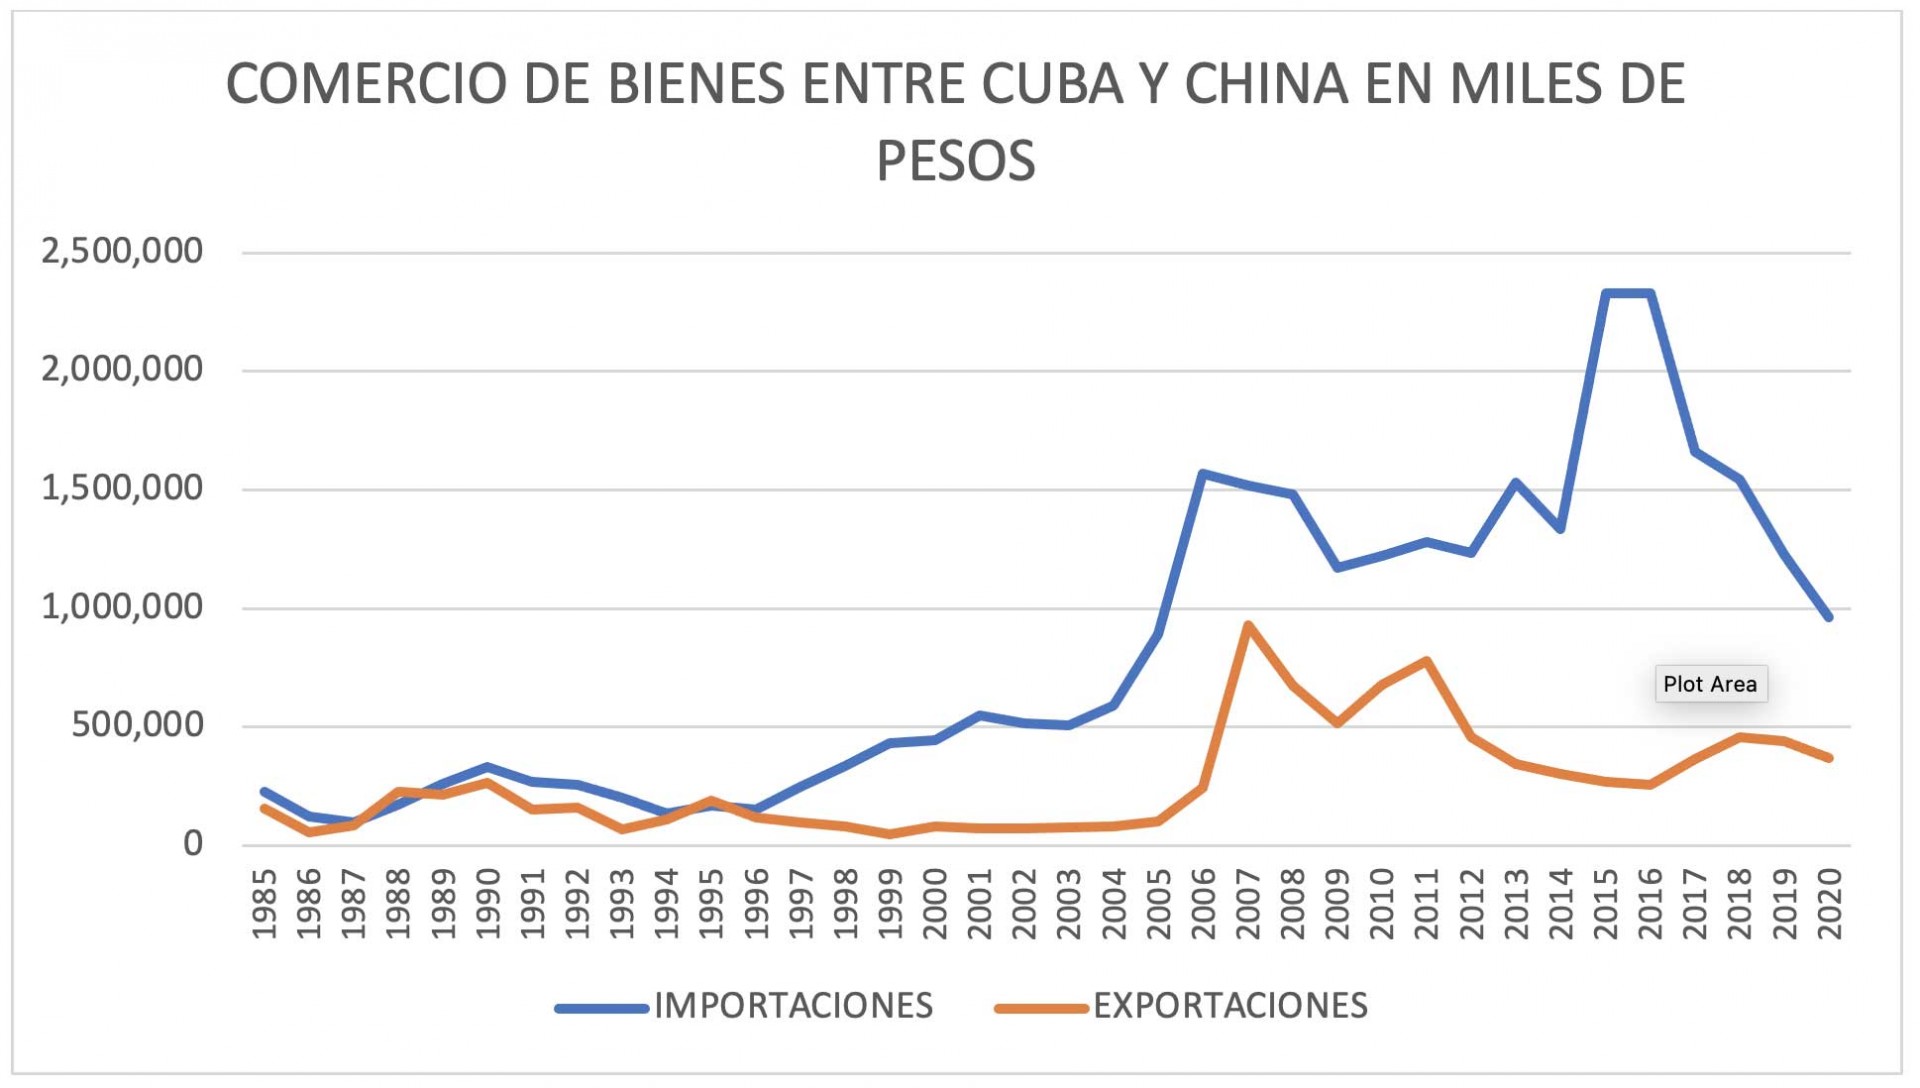 Grafico - Comercio de bienes entre Cuba y China en miles de pesos entre 1985 hasta 2020